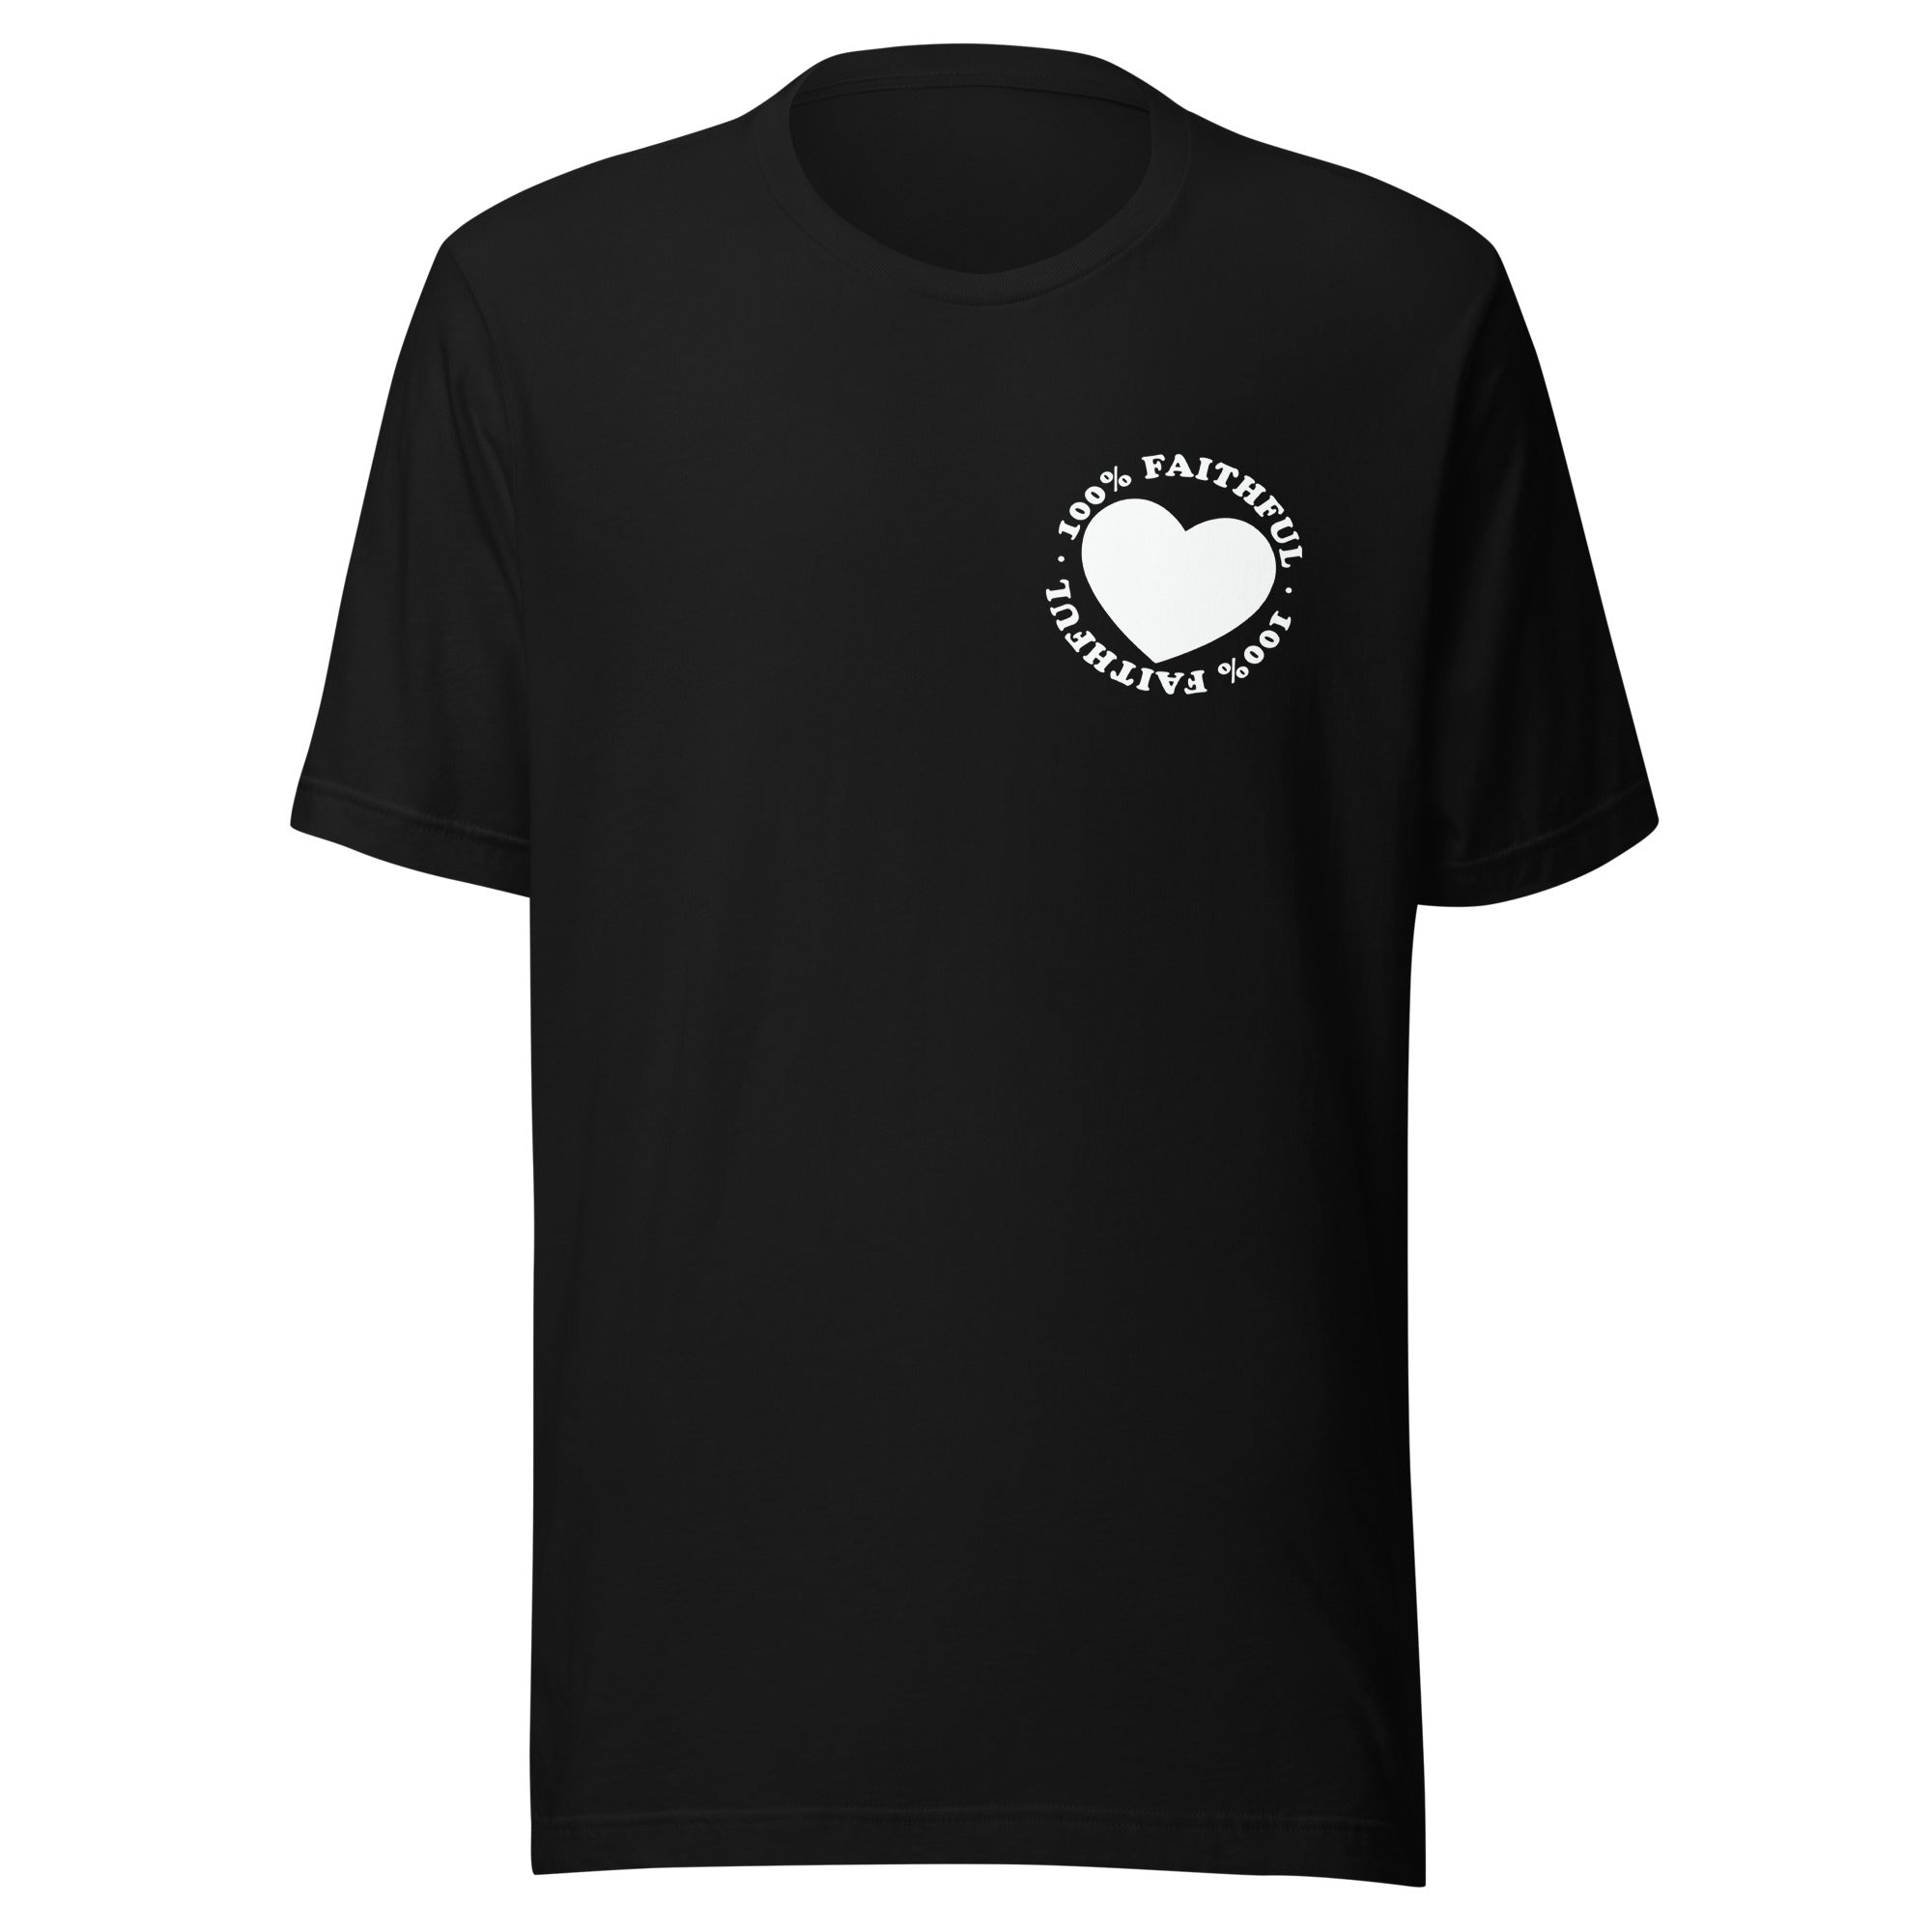 100% Faithful Unisex T-Shirt